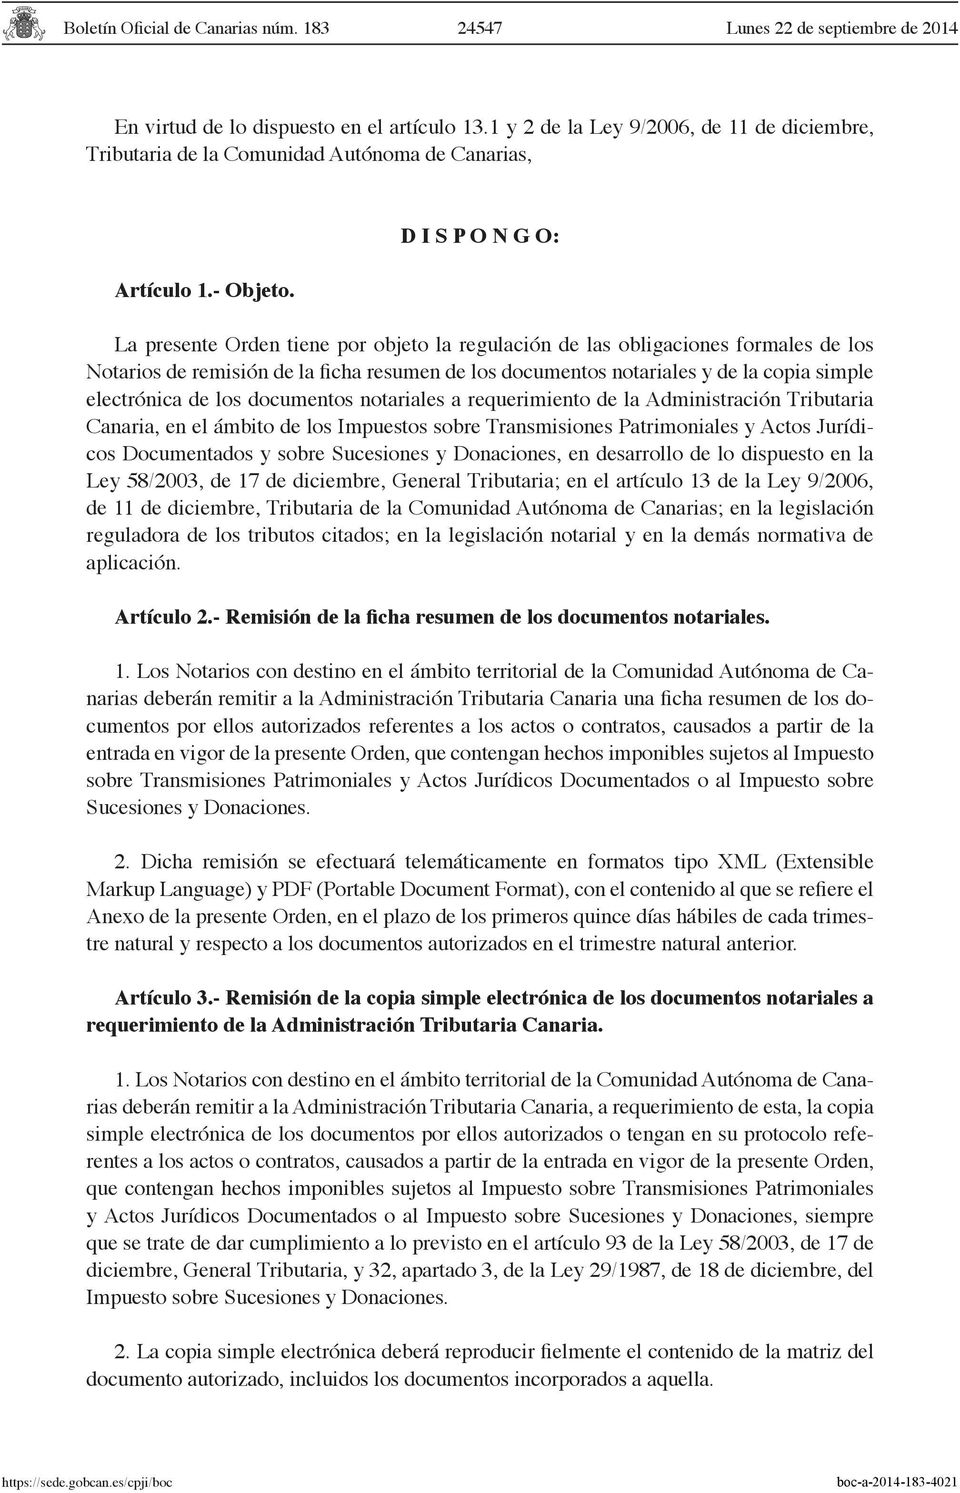 electrónica de los documentos notariales a requerimiento de la Administración Tributaria Canaria, en el ámbito de los Impuestos sobre Transmisiones Patrimoniales y Actos Jurídicos Documentados y